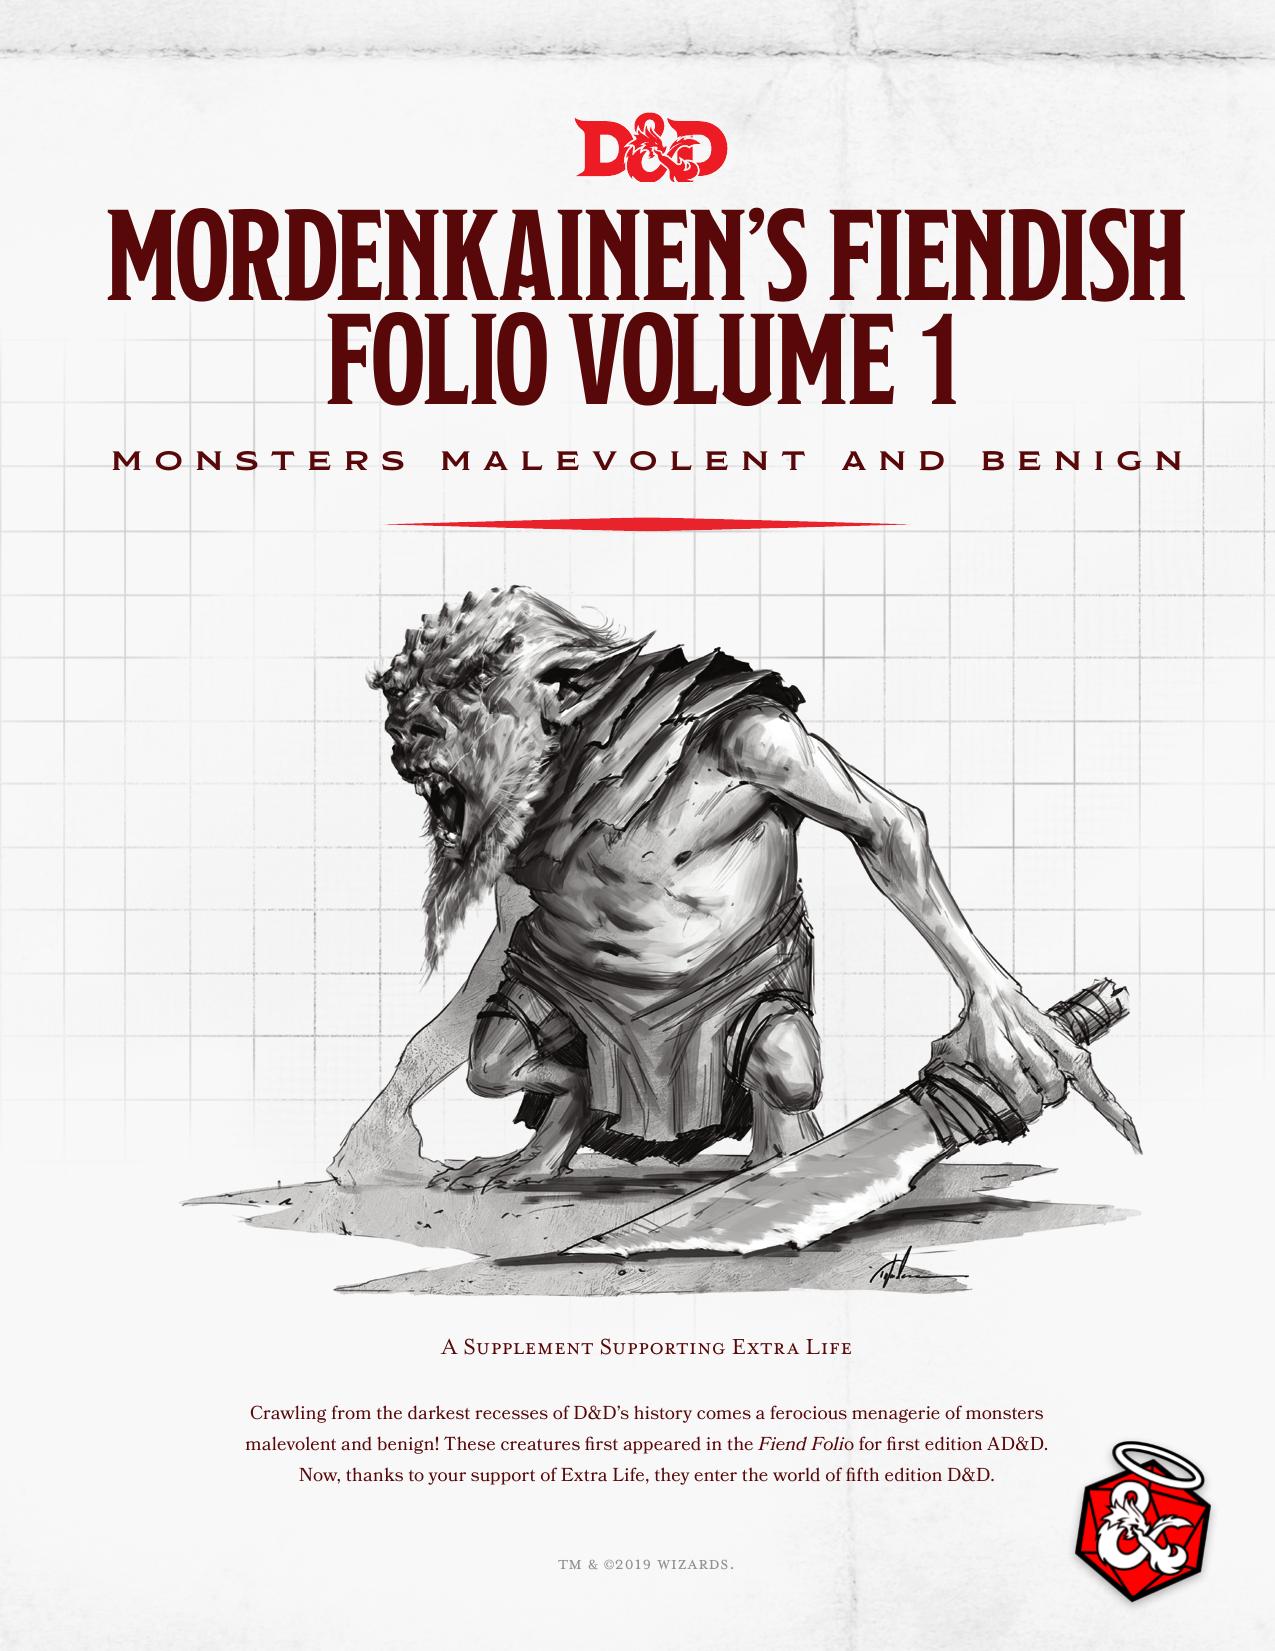 Mordenkainen's Fiendish Folio, Volume 1 Monsters Malevolent and Benign